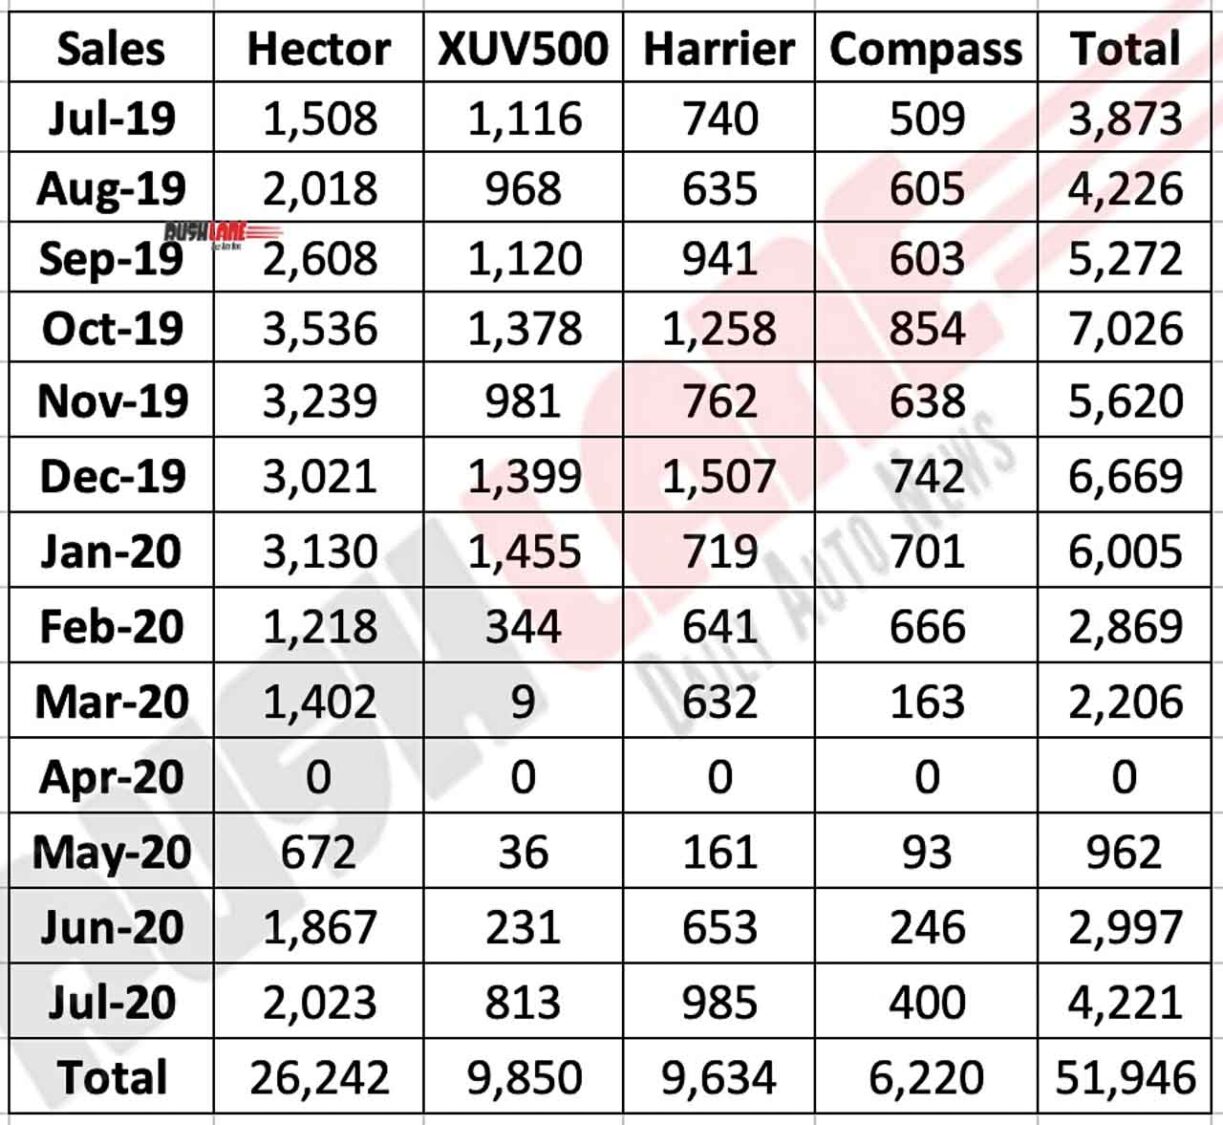 MG Hector sales vs rivals